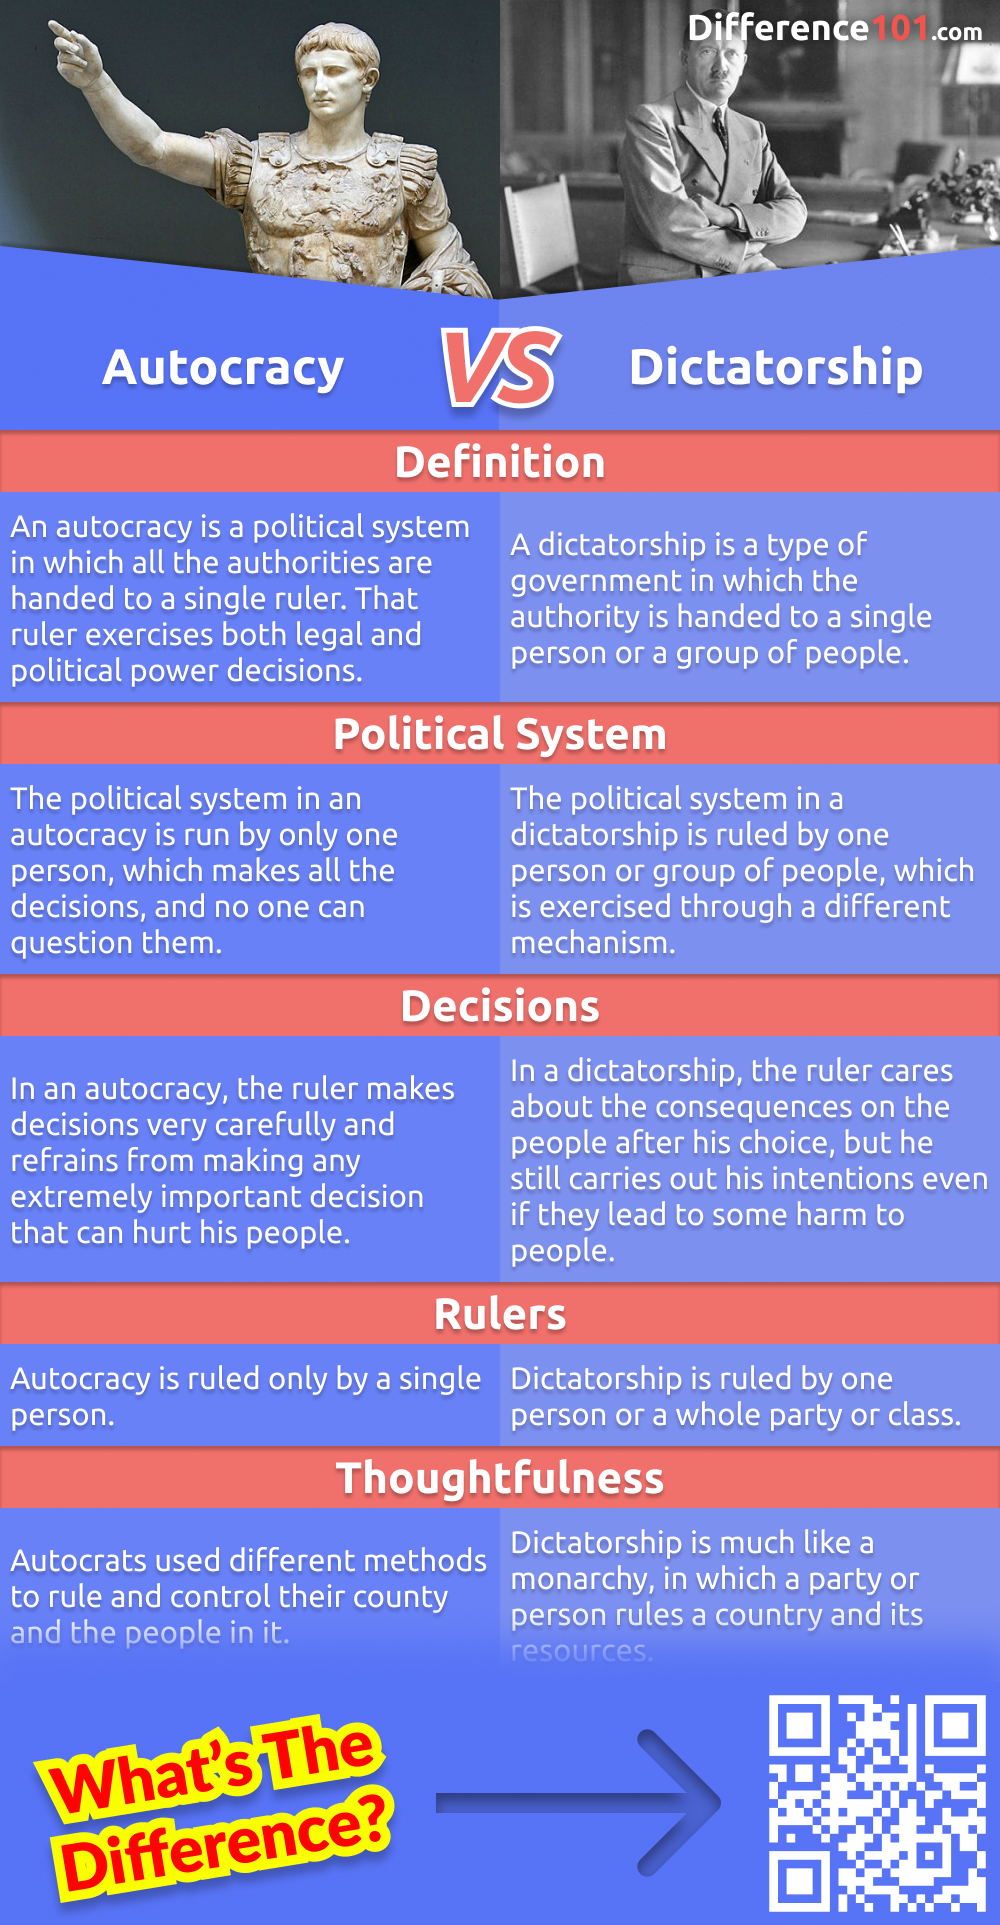 Quelles sont les différences entre une autocratie et une dictature ? Quels sont les avantages et les inconvénients de chaque système de gouvernement ? Quels sont les exemples de chacun d'eux ? Lisez la suite pour le savoir.